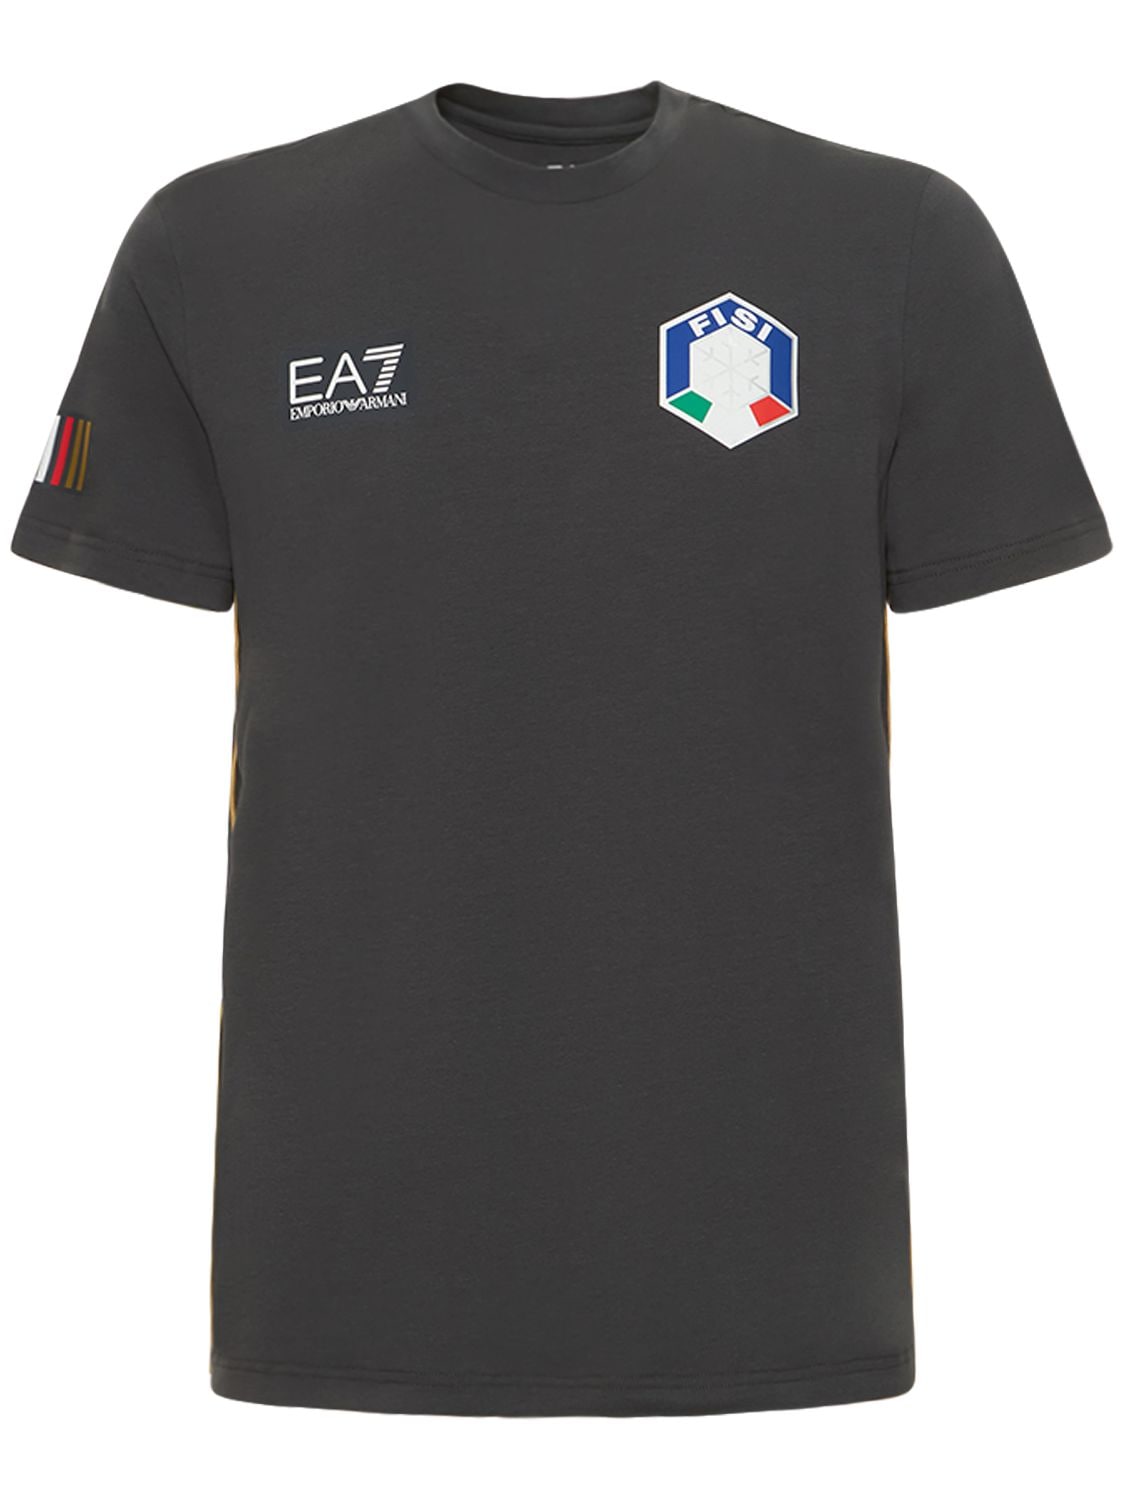 Fisi Stretch Cotton Jersey T-shirt - EA7 EMPORIO ARMANI - Modalova